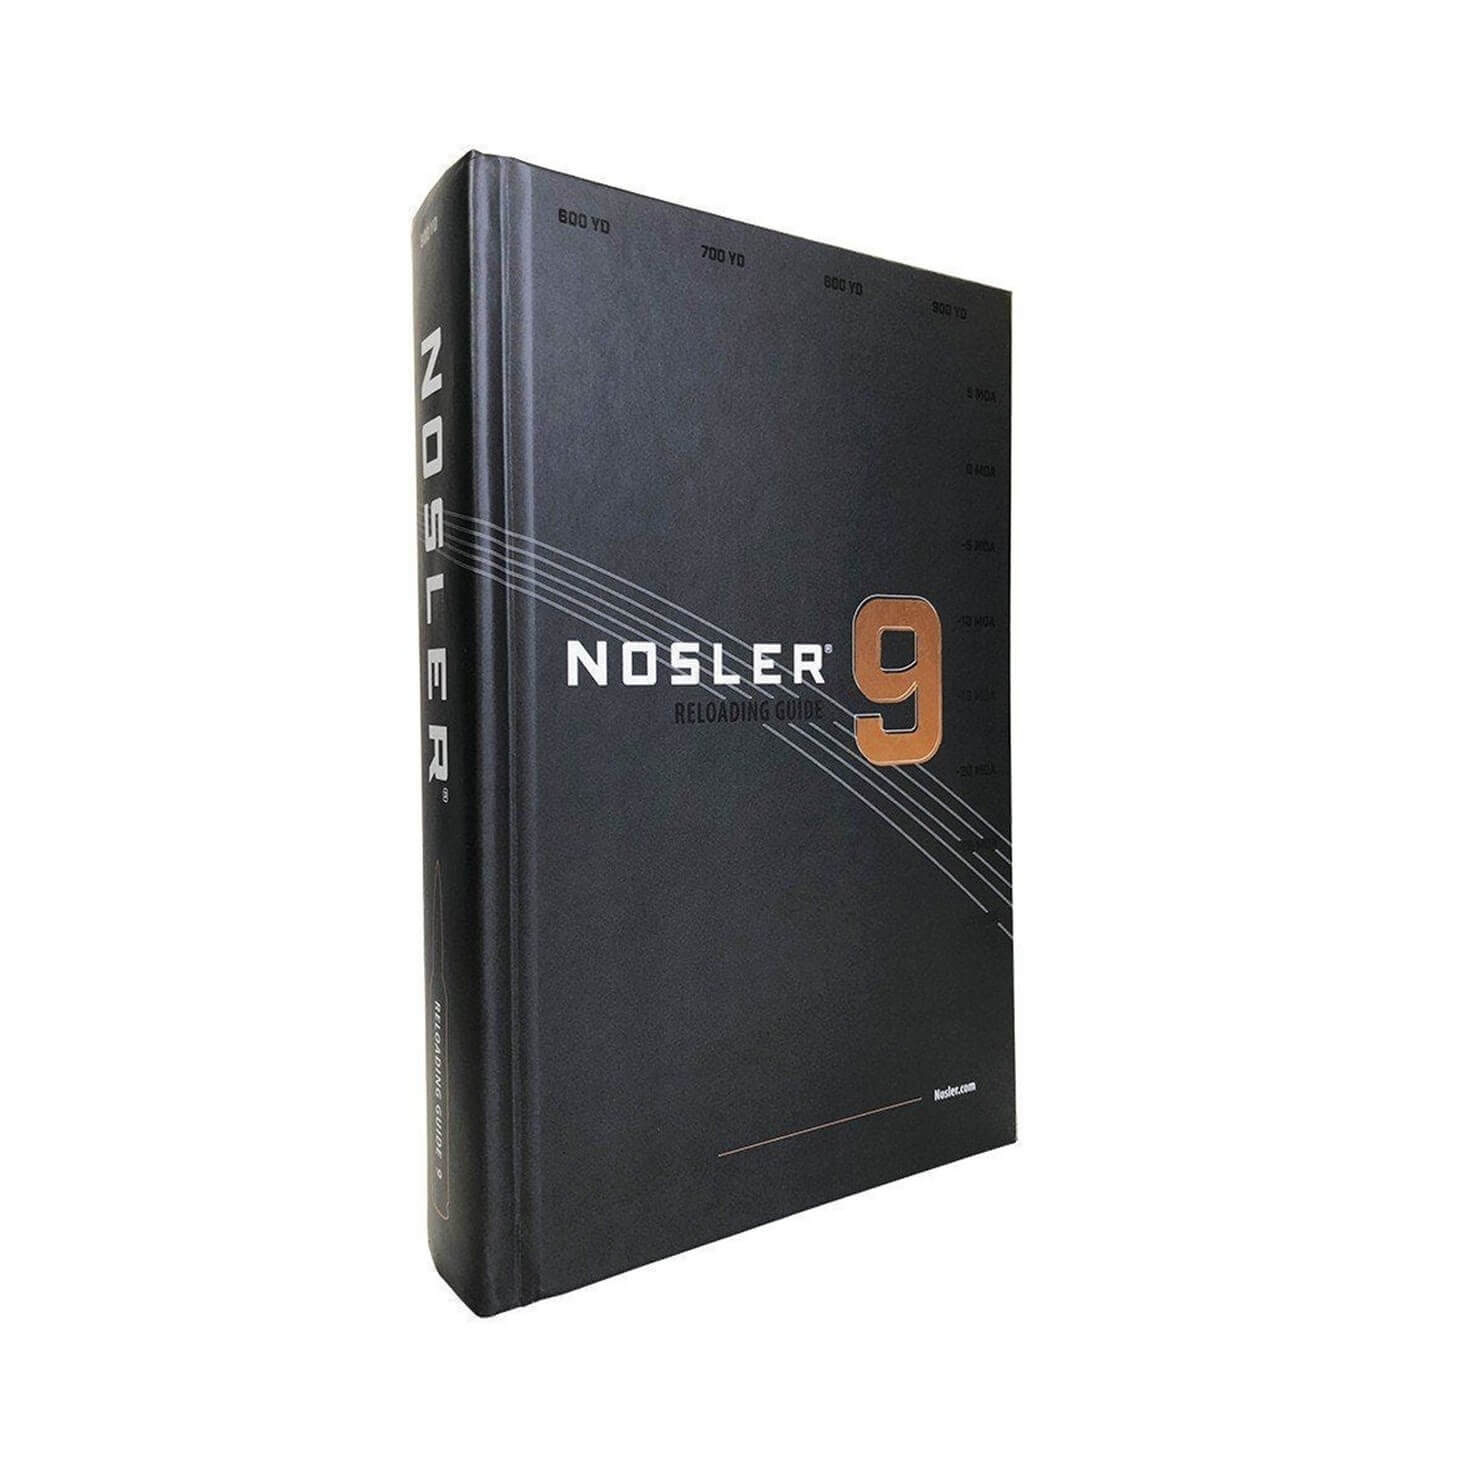 Nosler Reloading Guide 9th Edition